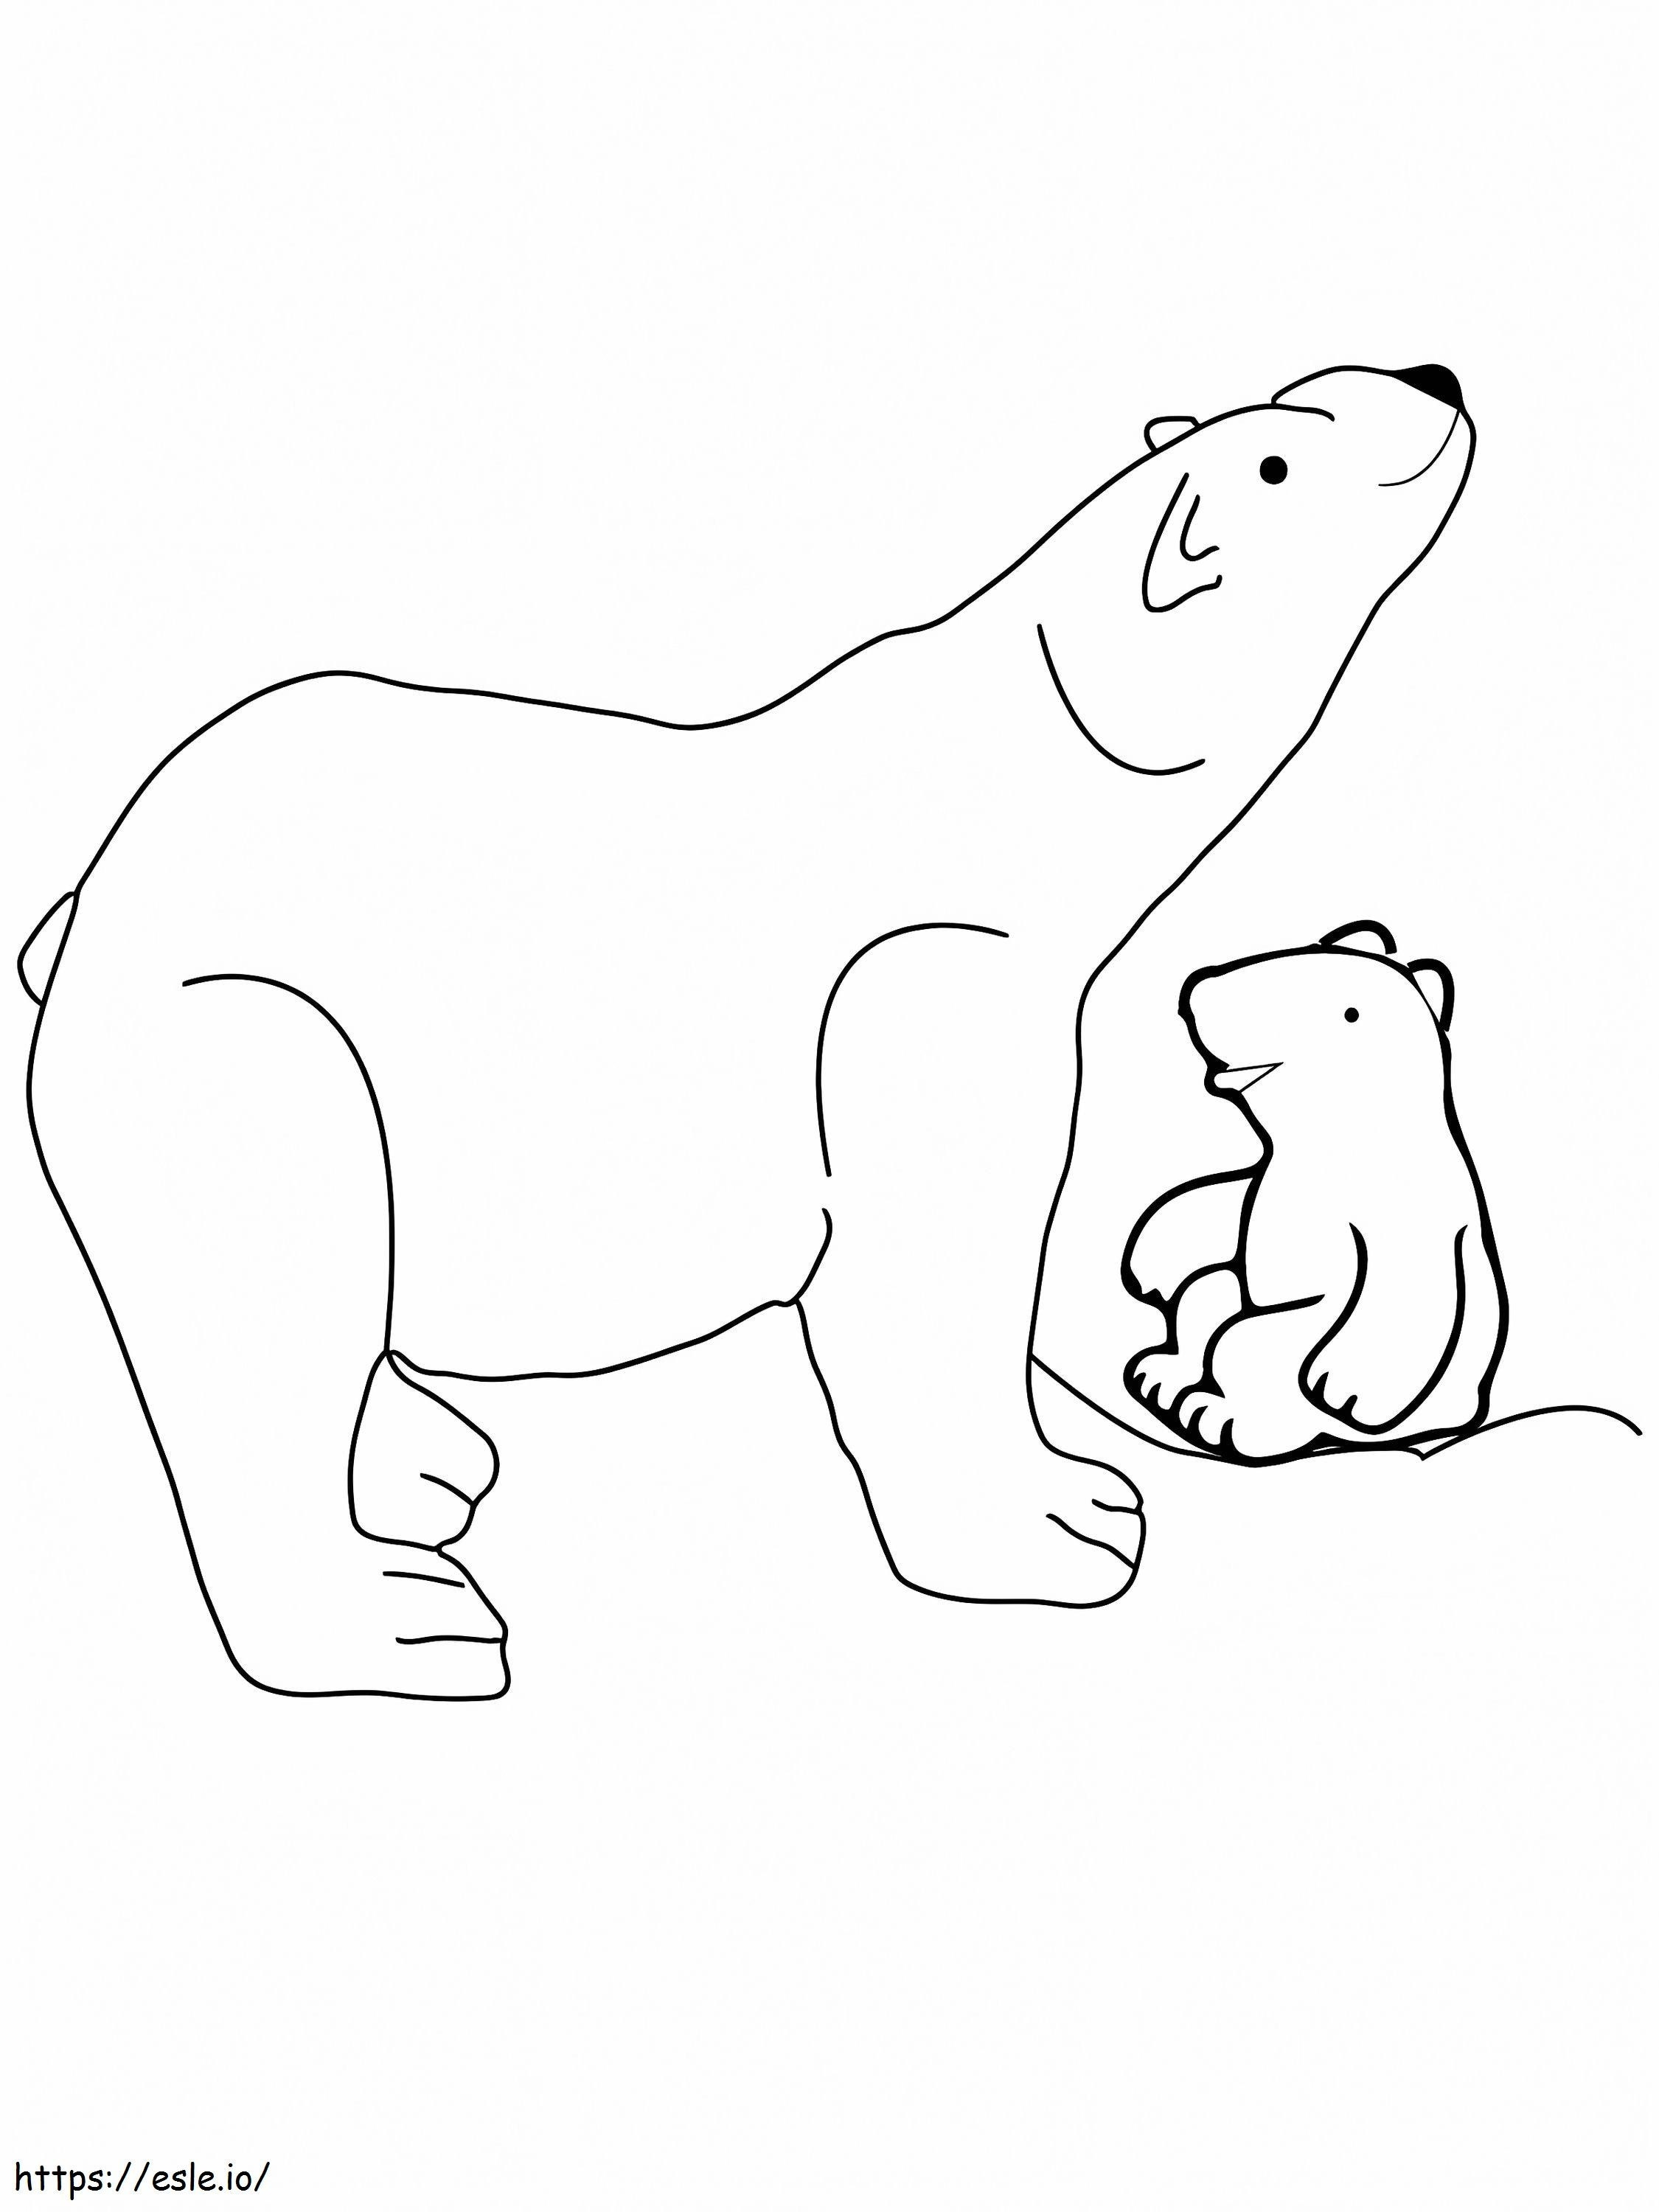 Cachorro y oso olfateando animales árticos para colorear